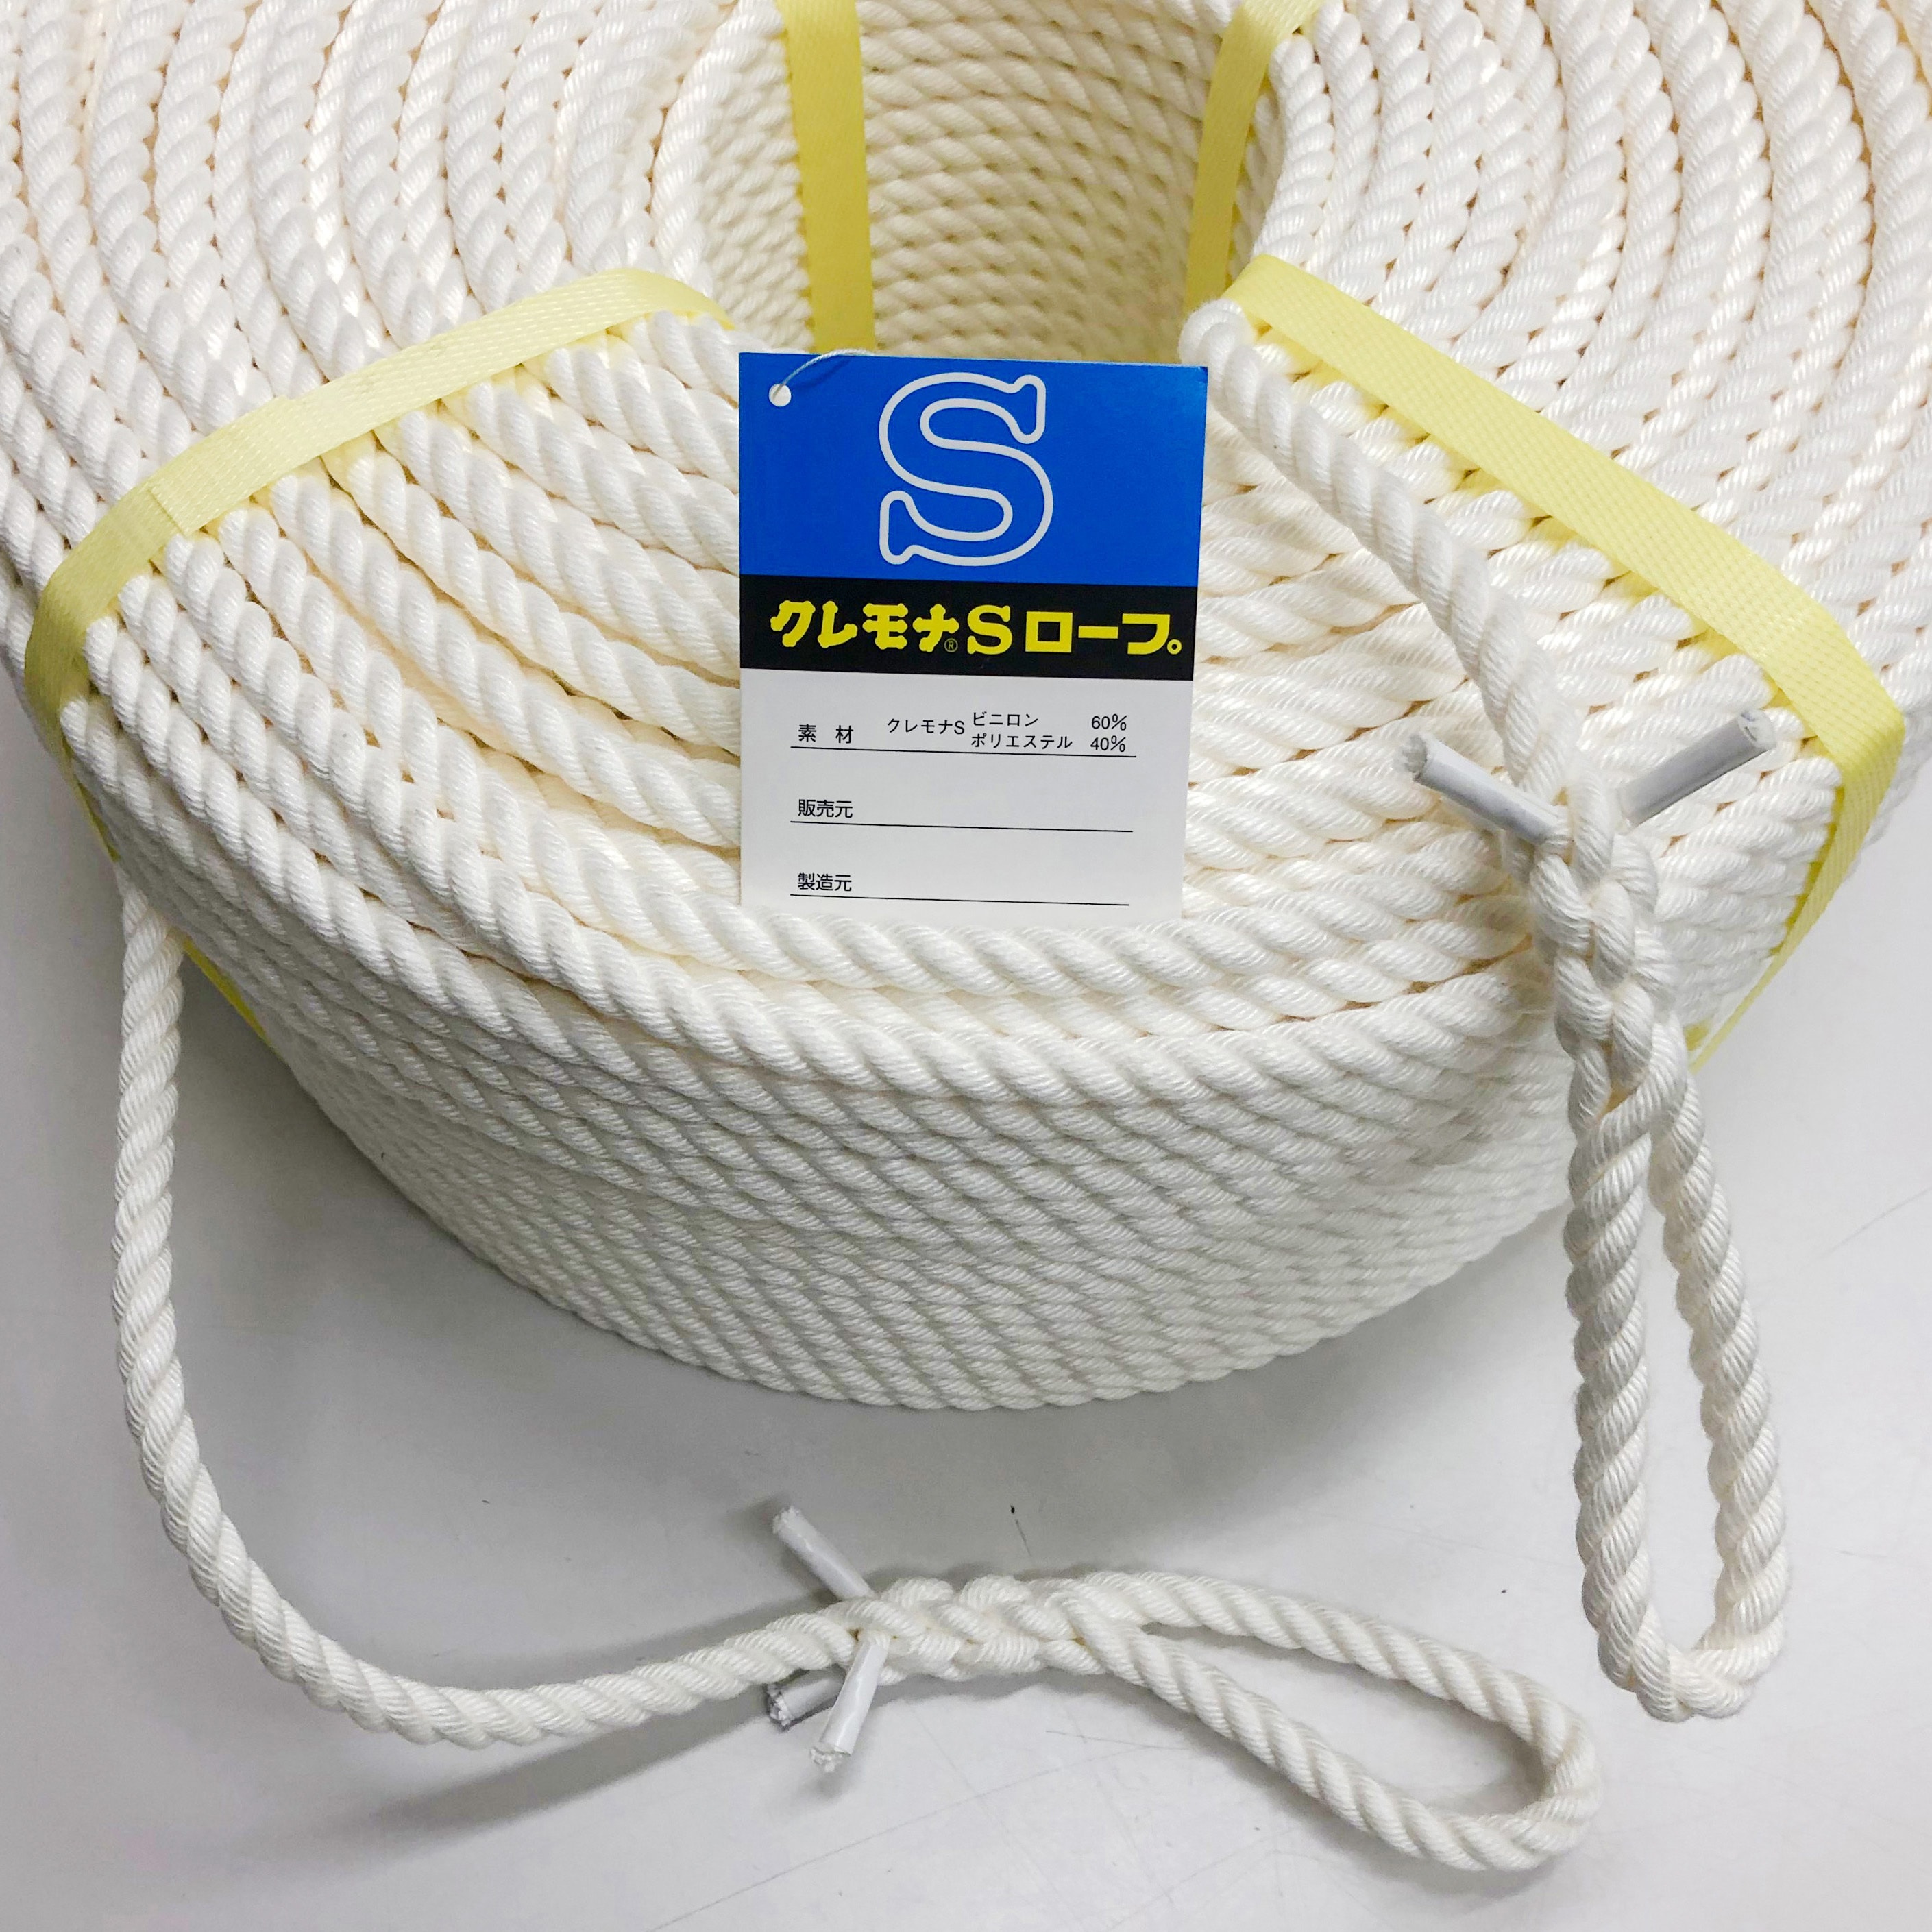 クレモナロープ クレモナSロープ 繊維ロープ 合繊ロープ 18mm×50m 直径 